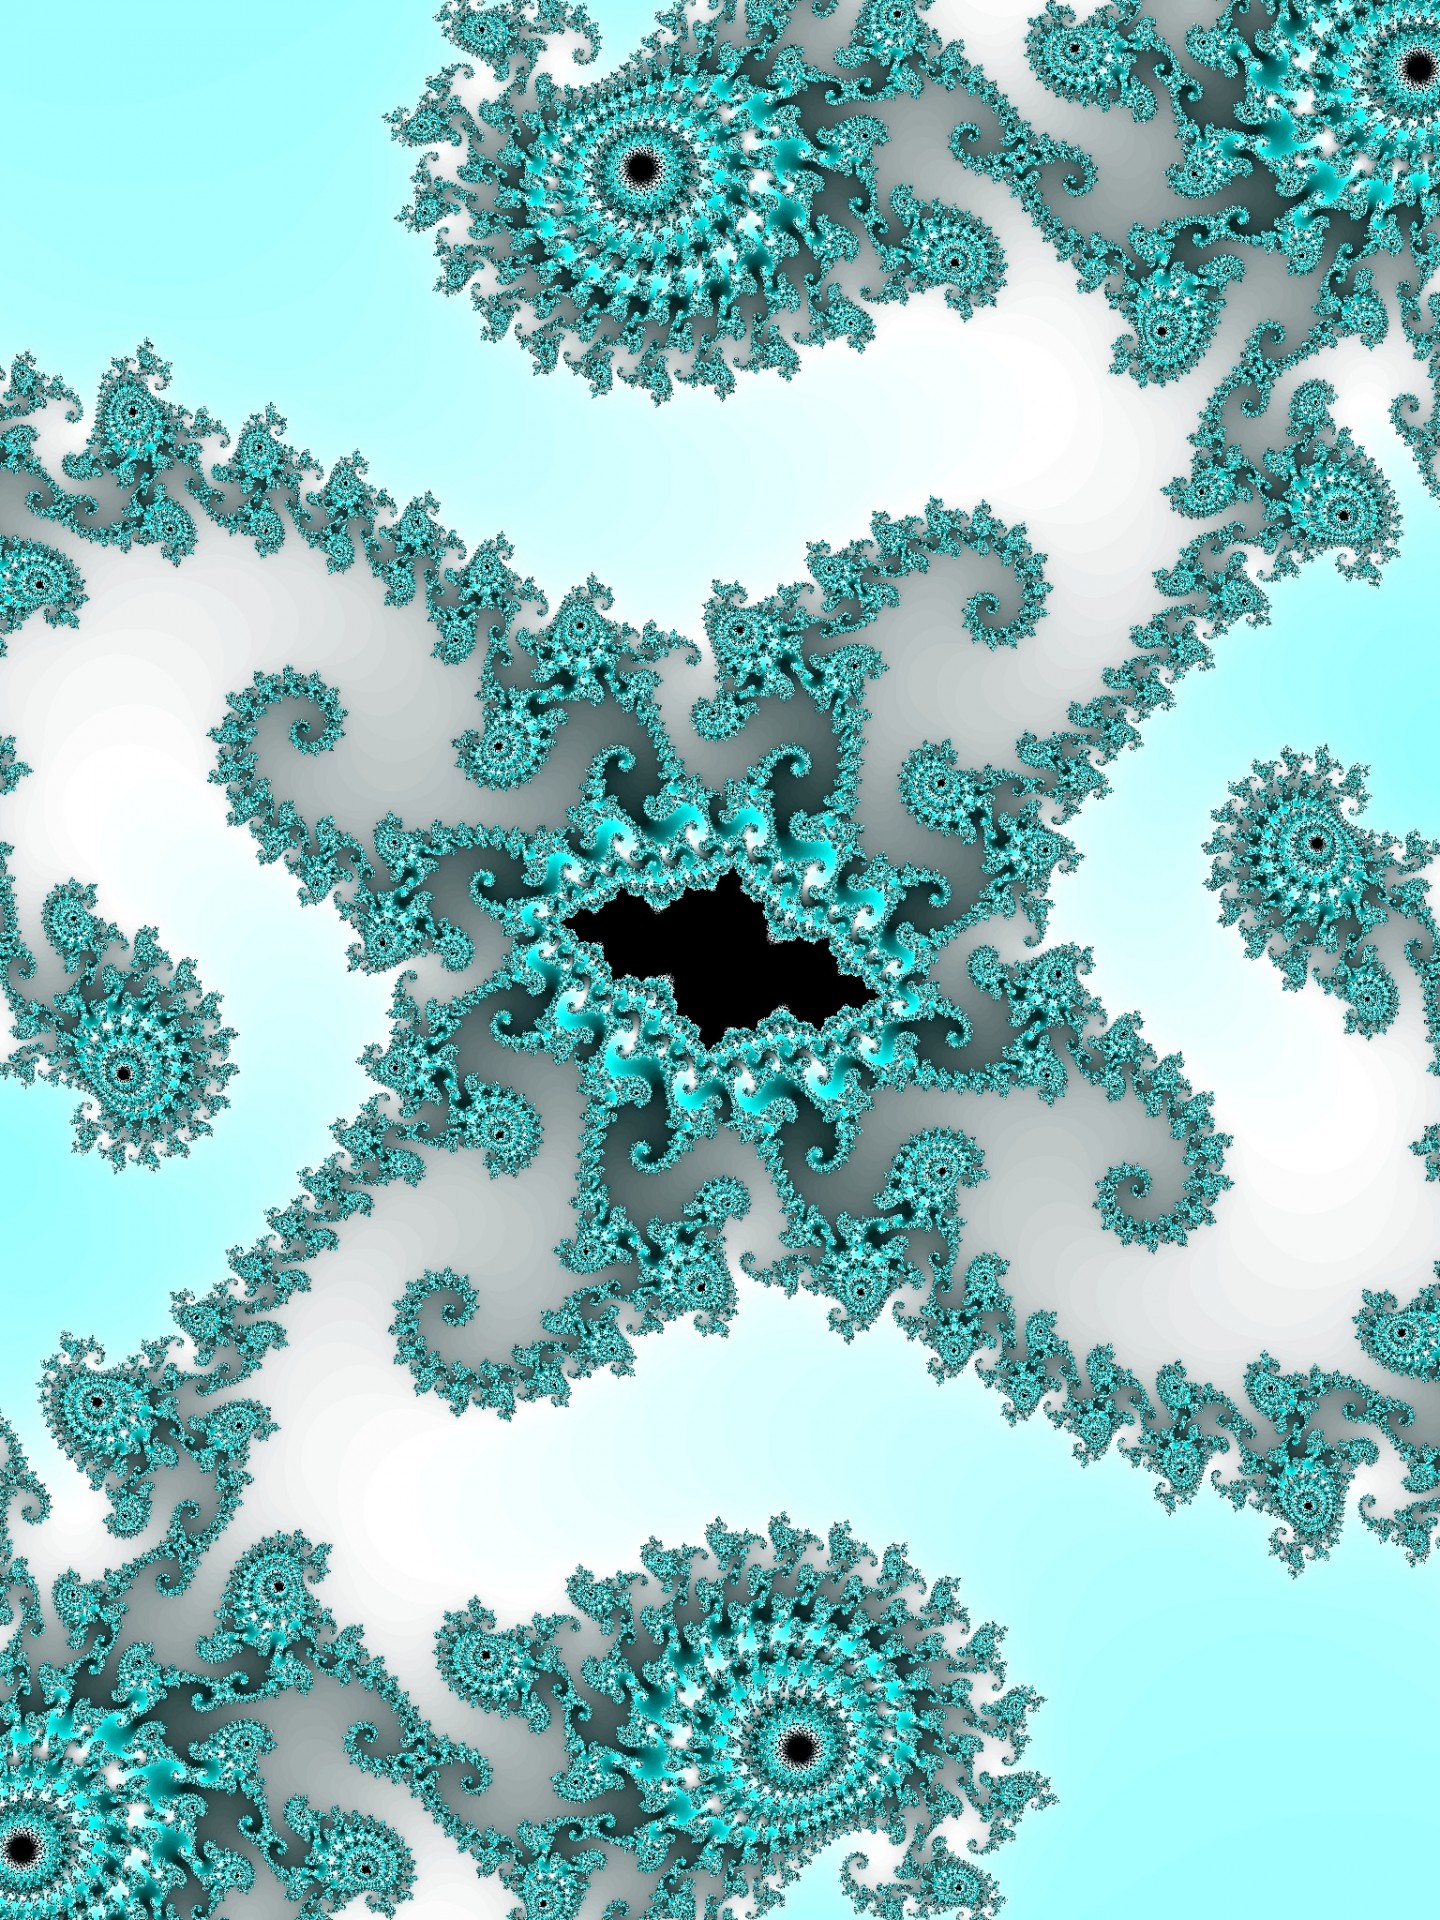 Fundal fractal decorative